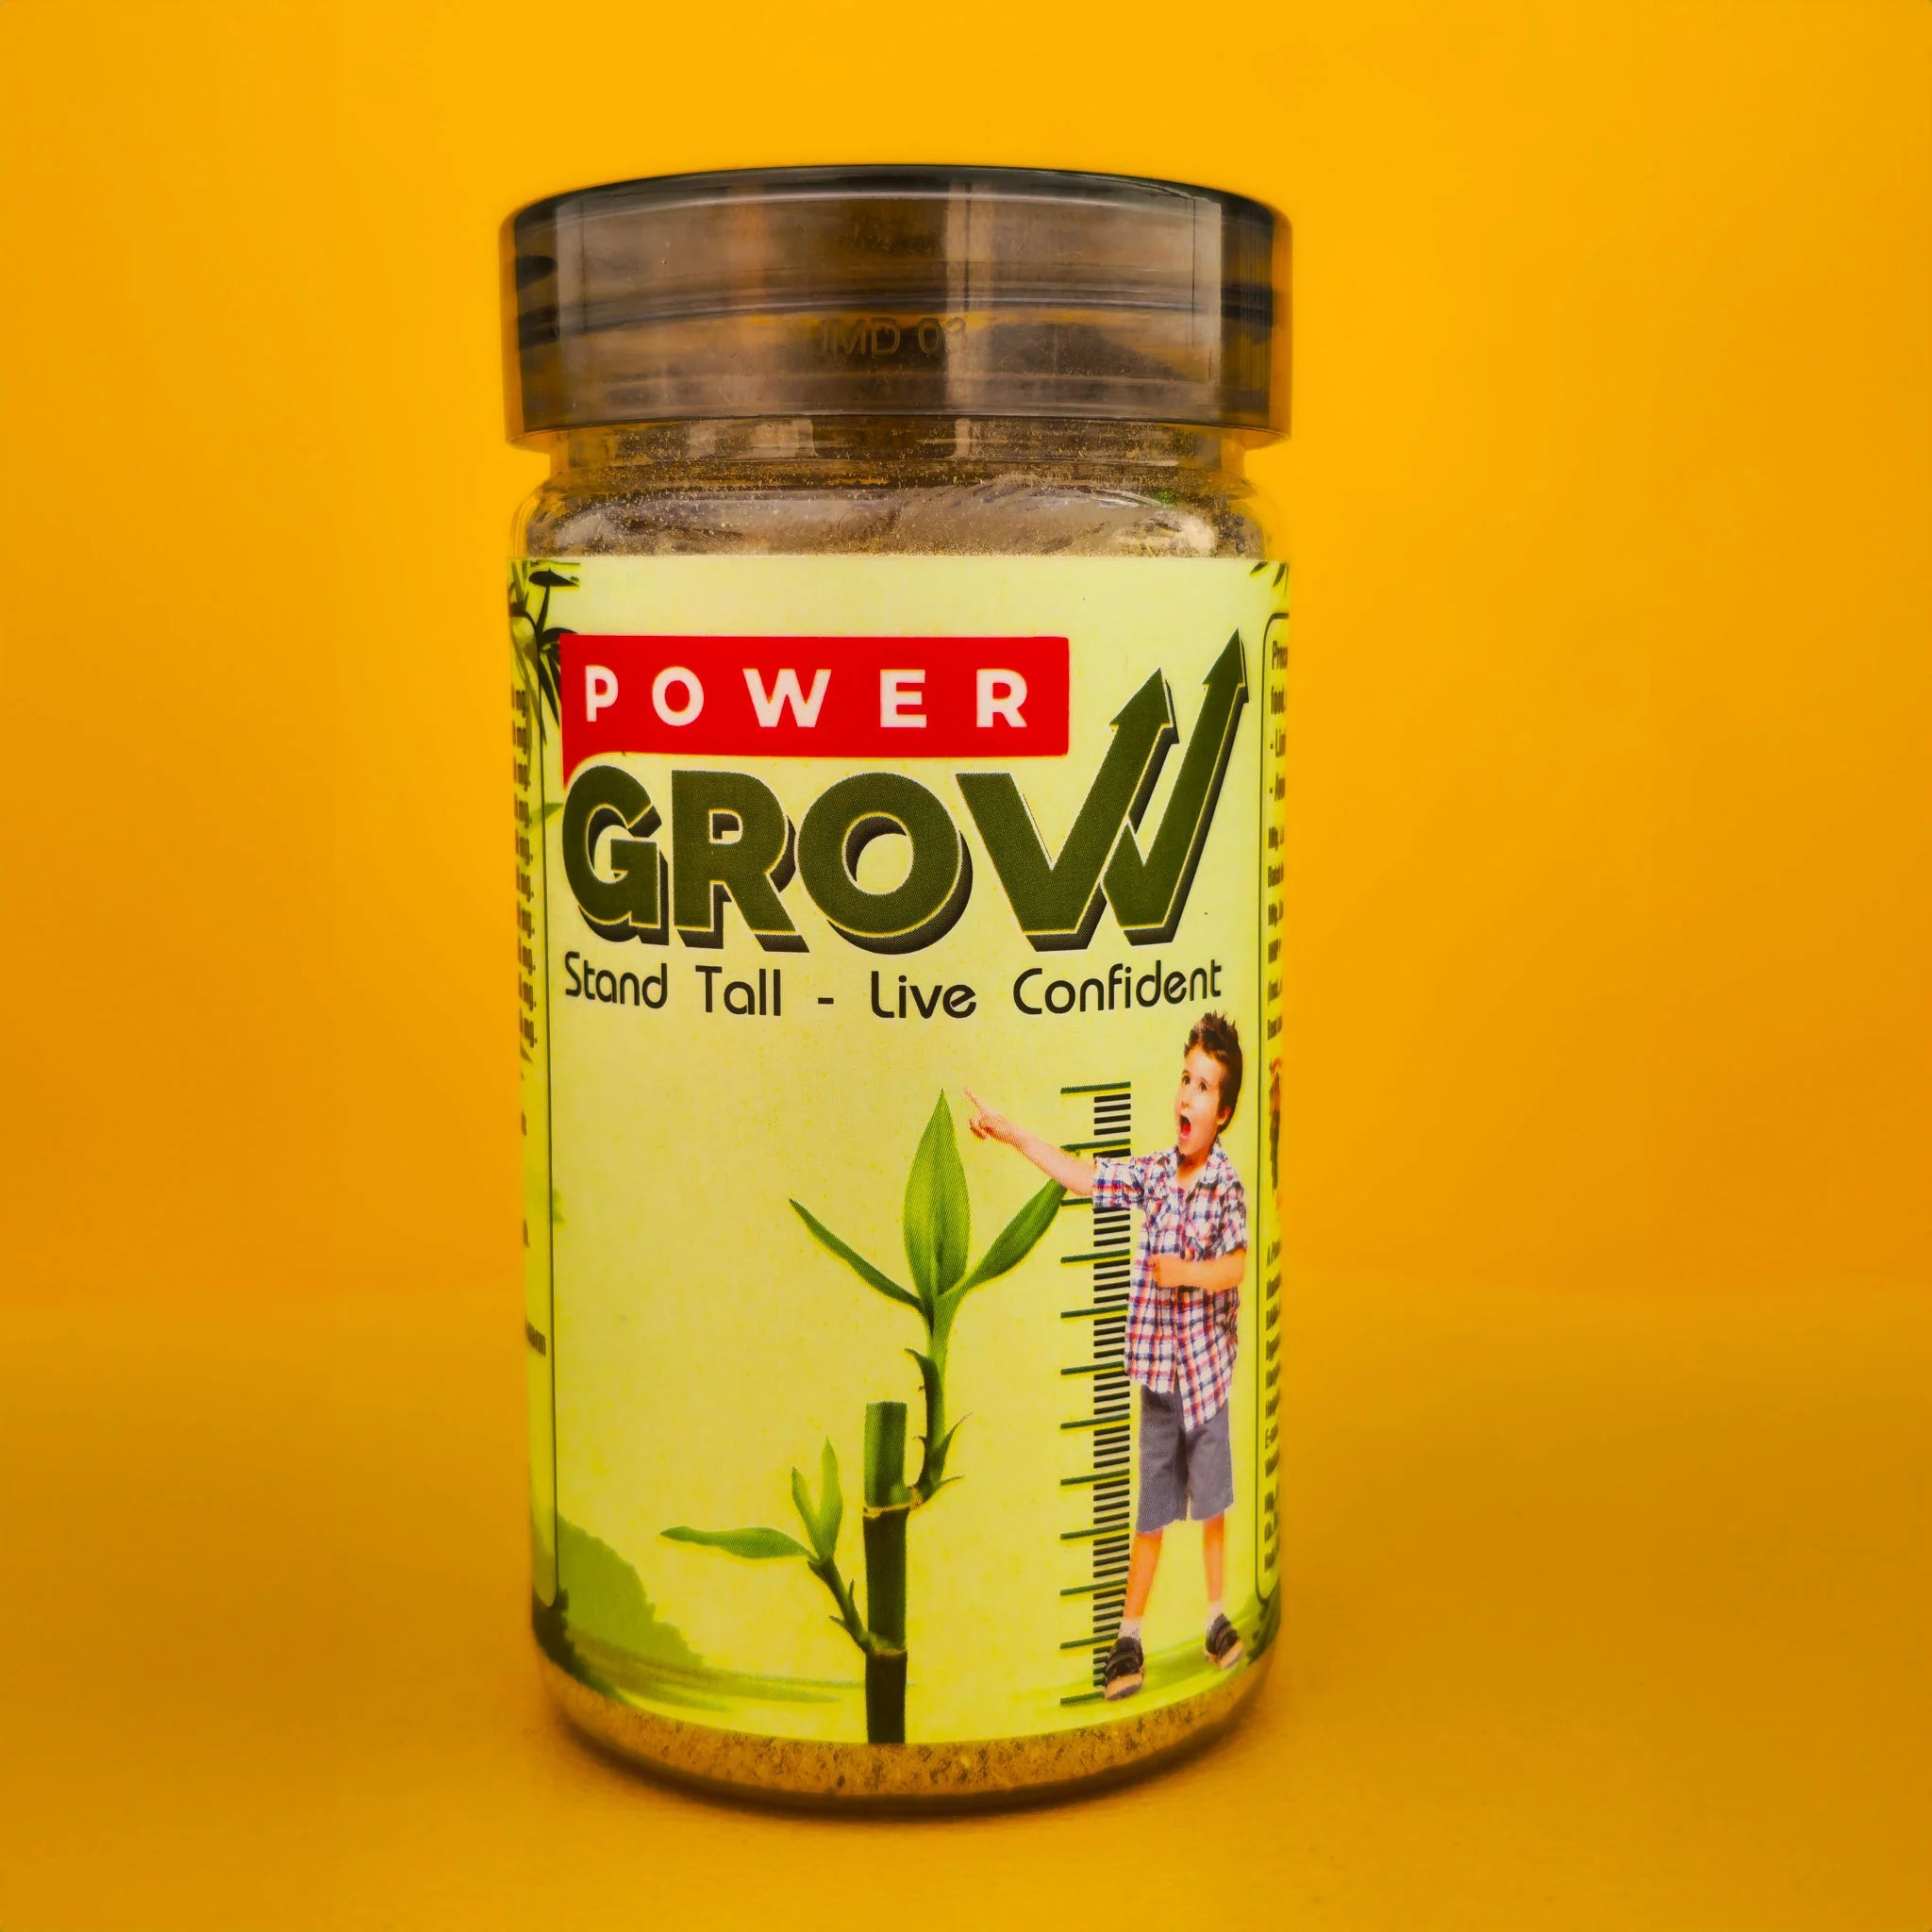 "Power Grow 🌱: आपकी लंबाई और स्वास्थ्य में आयुर्वेदिक और प्राकृतिक उत्कृष्टता का संयोजन"